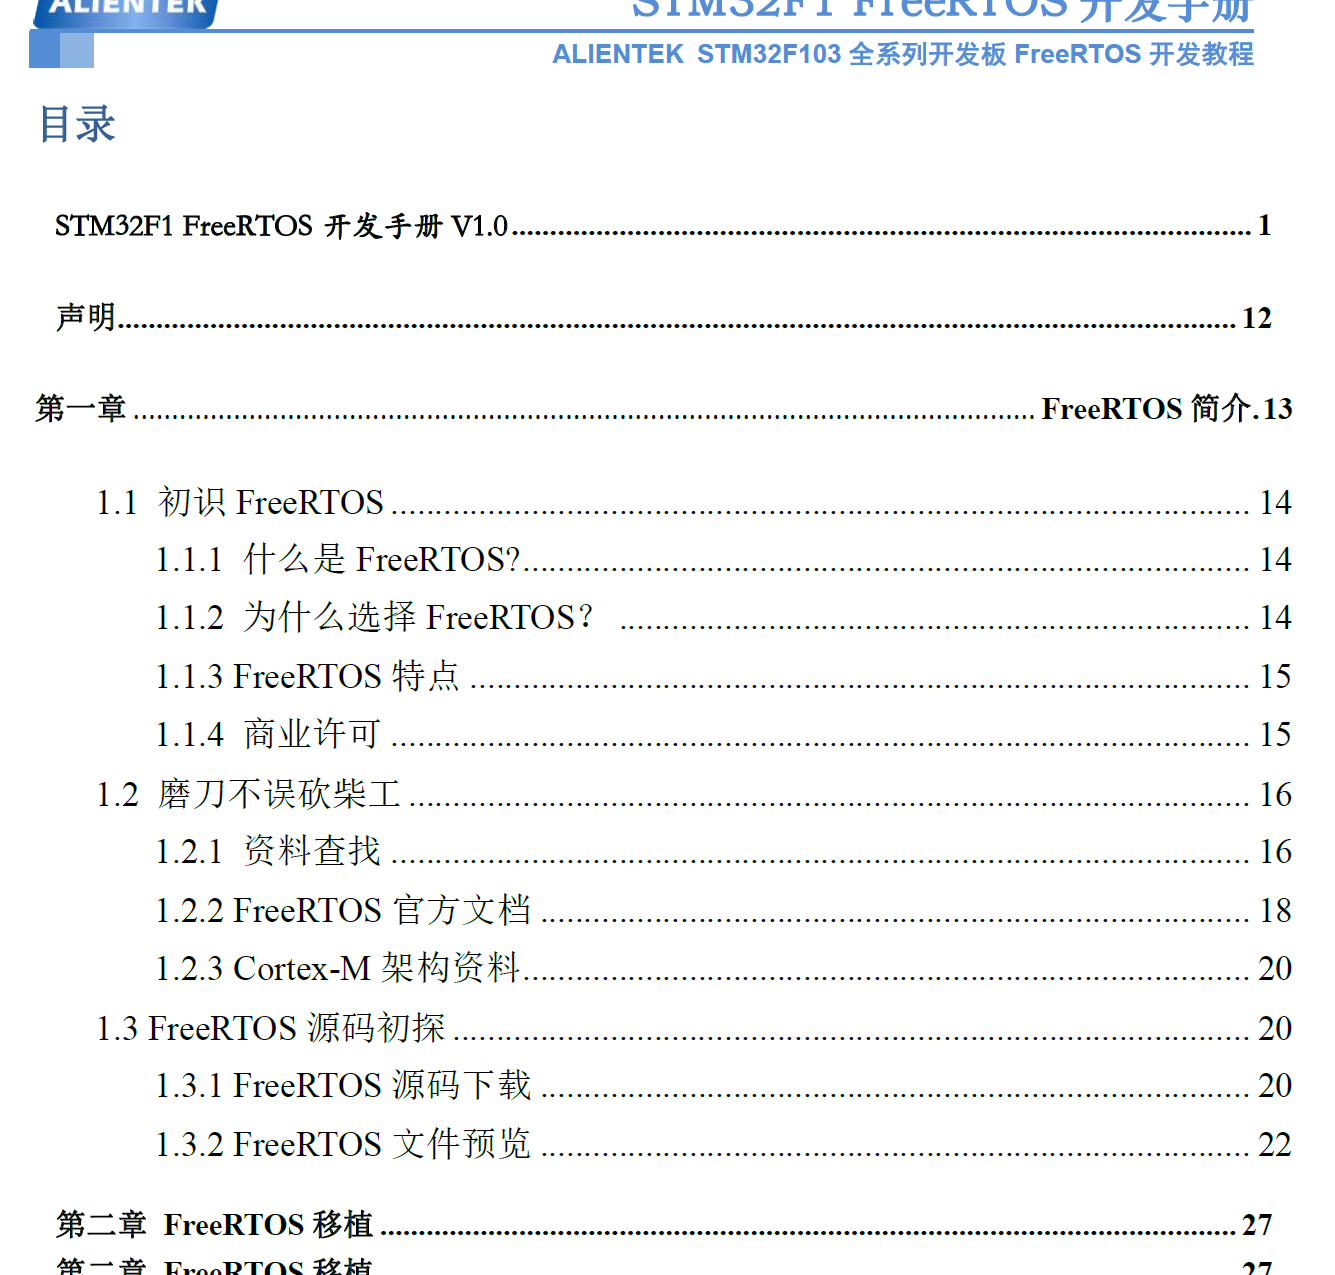  STM32F1 FreeRTOS开发手册_V1